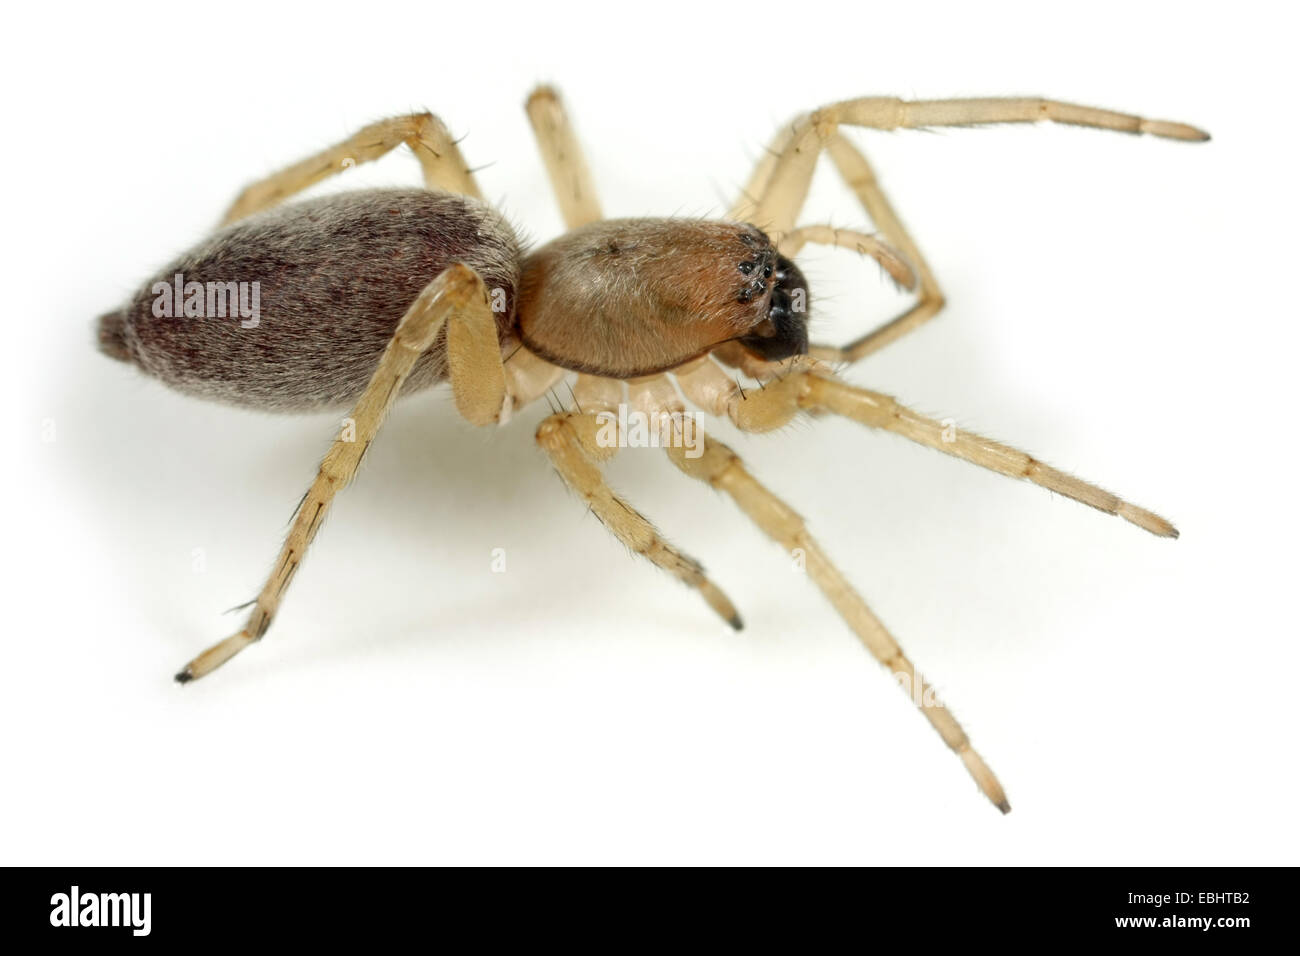 Eine weibliche Sac spider (Clubiona reclusa) auf weißem Hintergrund. Sac Spinnen sind Teil der Familie Clubionidae. Stockfoto